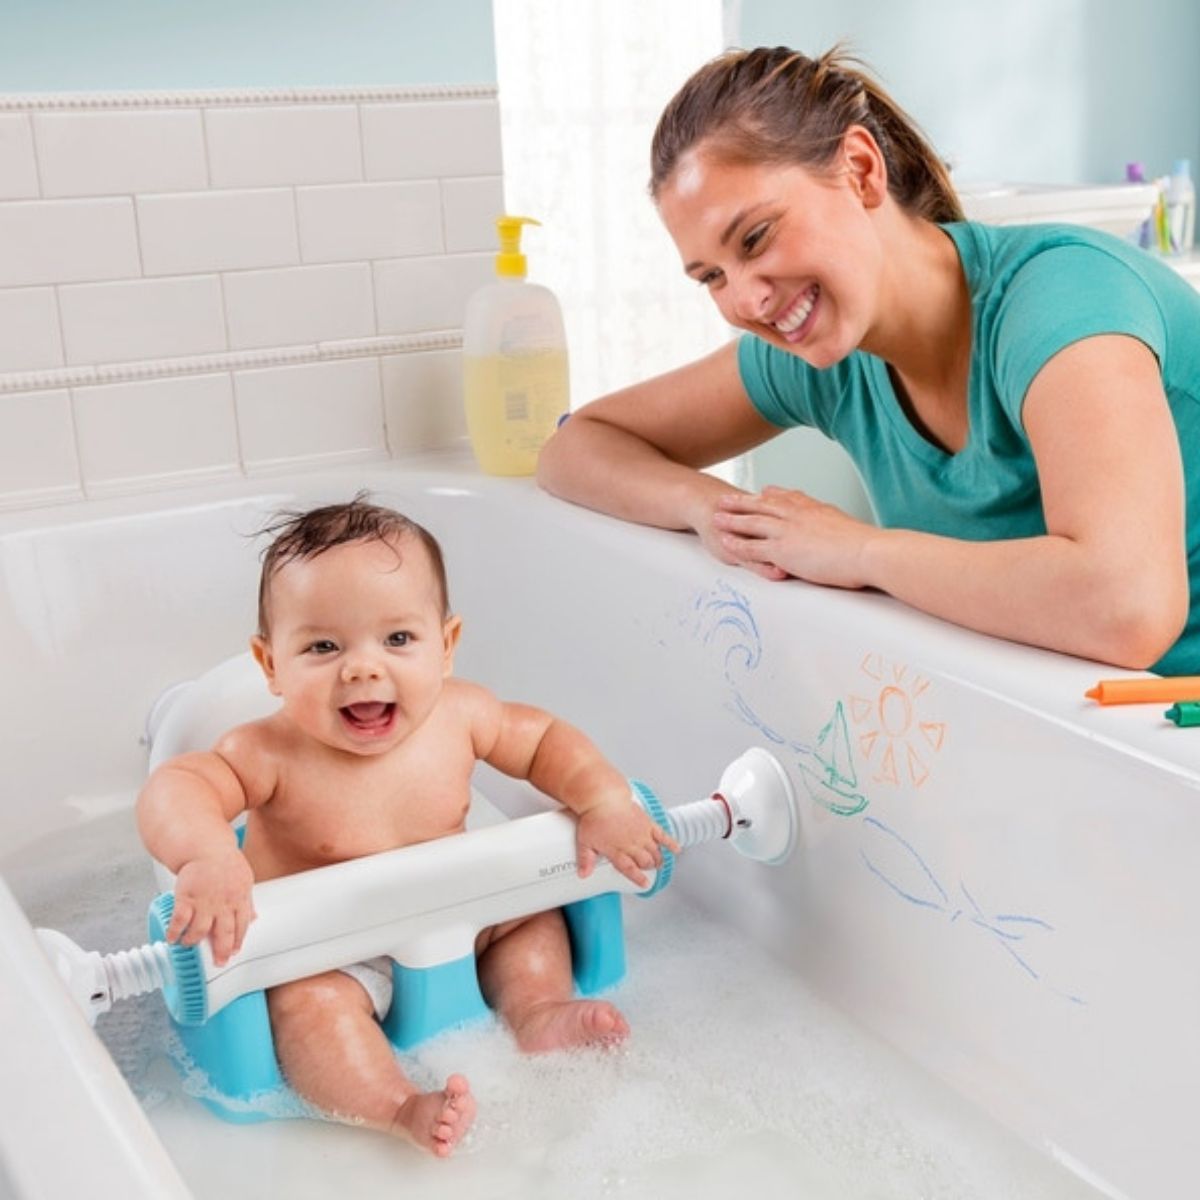 Comment puis-je faire en sorte que mon bébé aime les bains ?